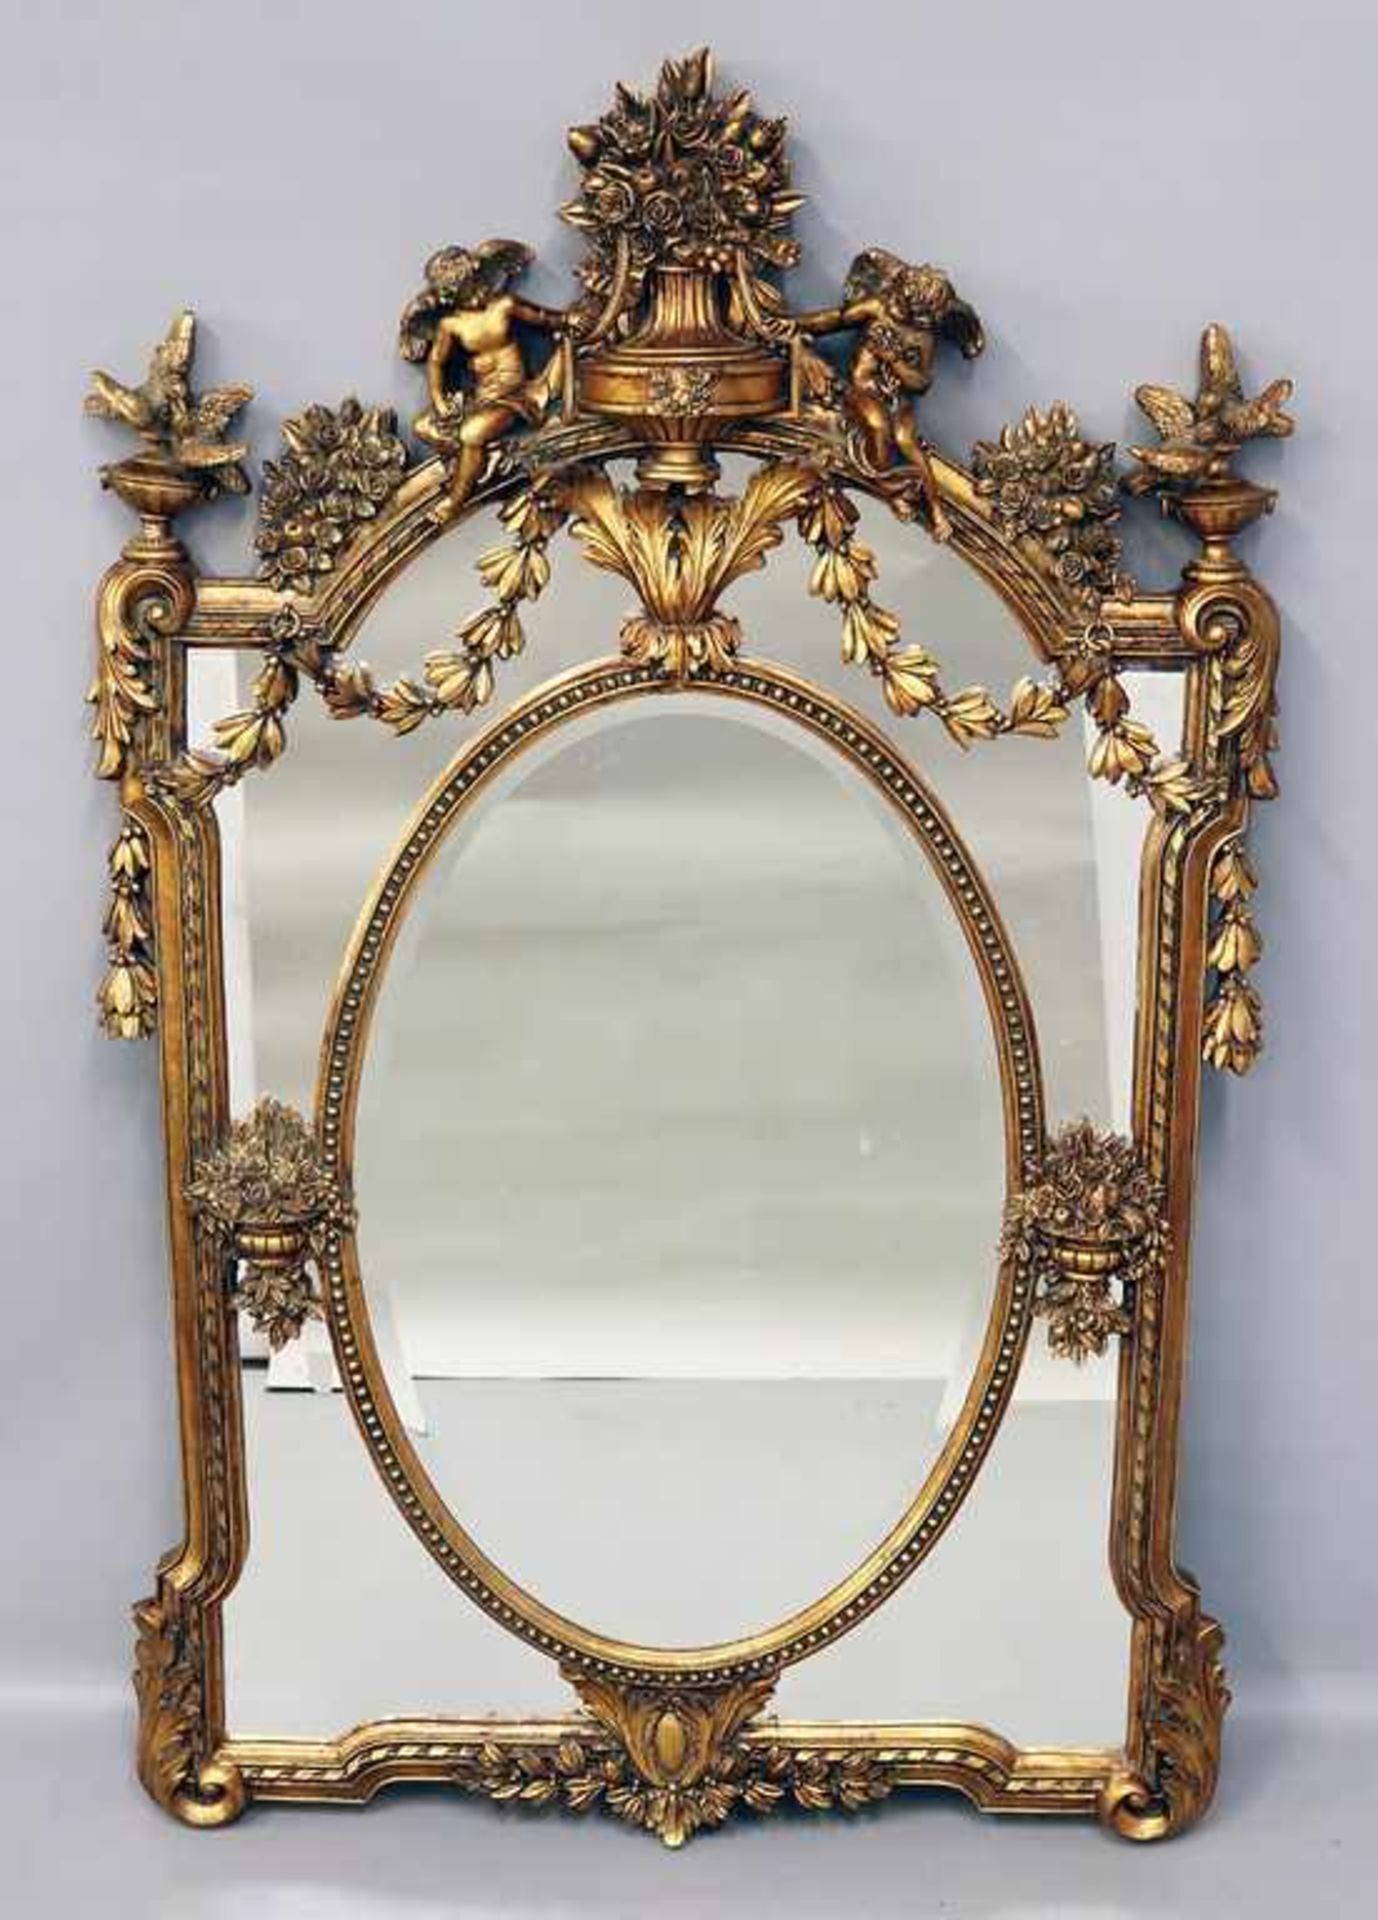 Spiegel im Stil des Klassizismus.Prunkvoller Wandspiegel, seitlich mit Taubenpärchen und Engeln